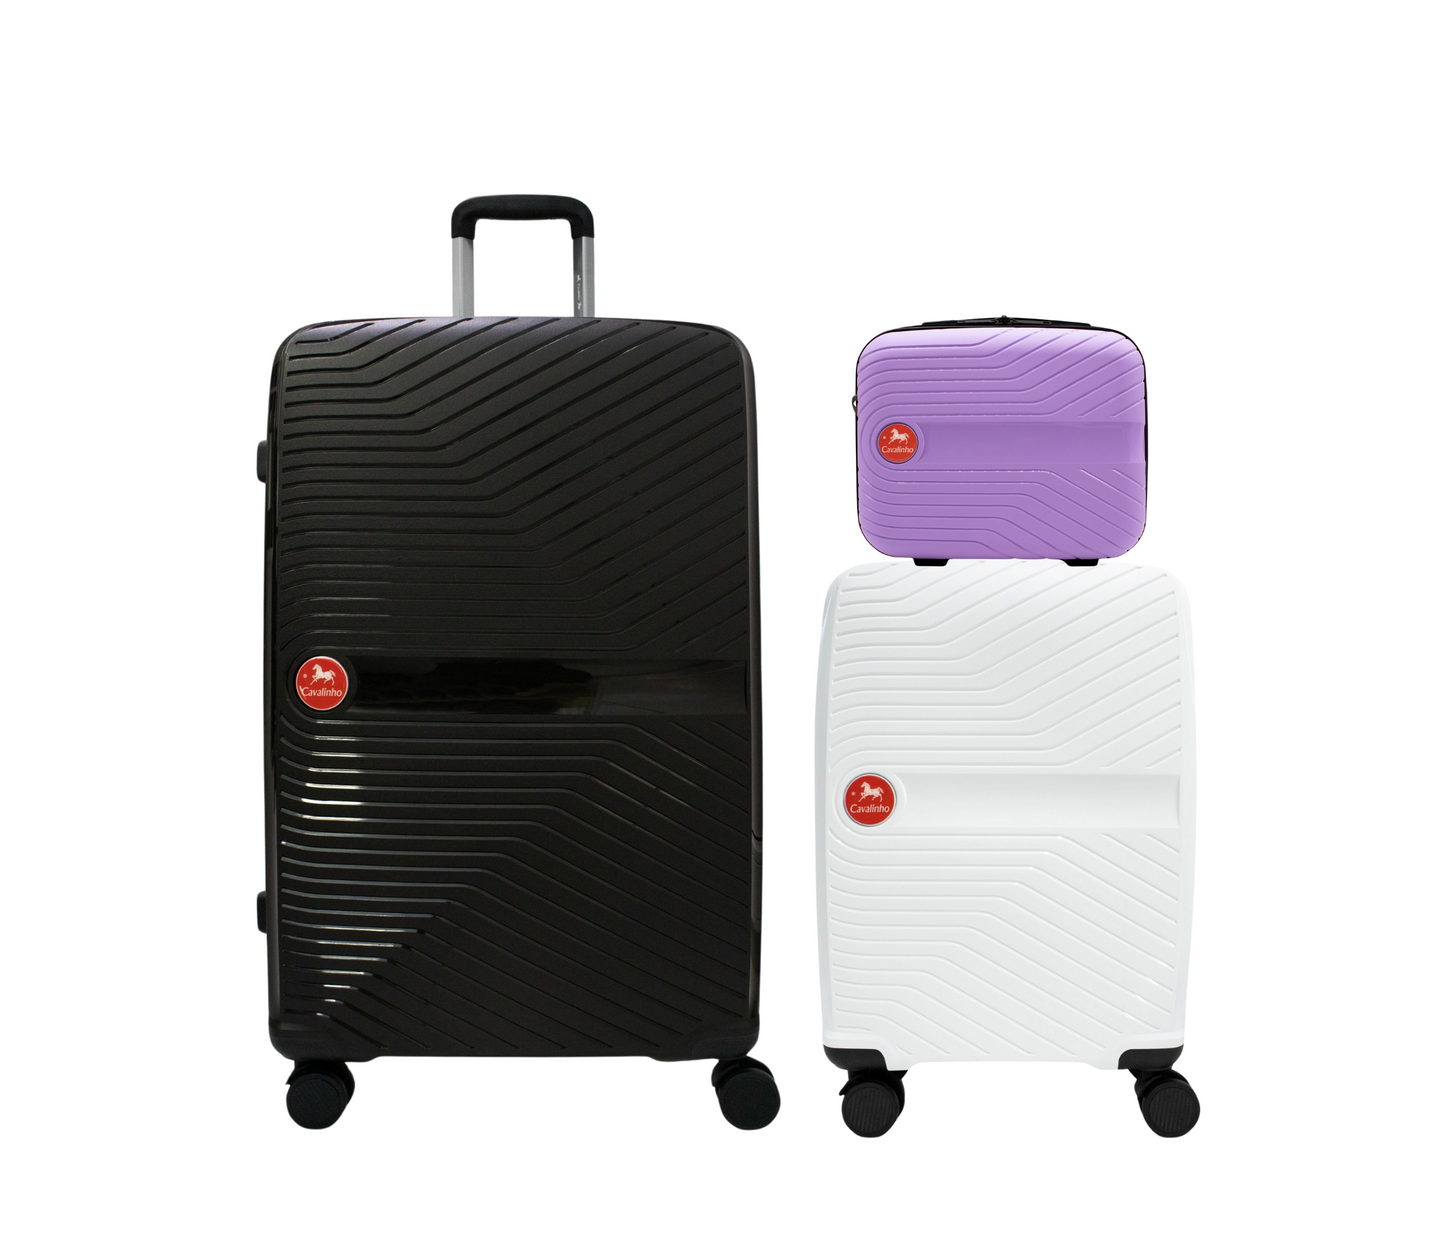 Cavalinho Canada & USA Colorful 3 Piece Luggage Set (15", 19" & 28") - Lilac White Black - 68020004.390601.S151928._1